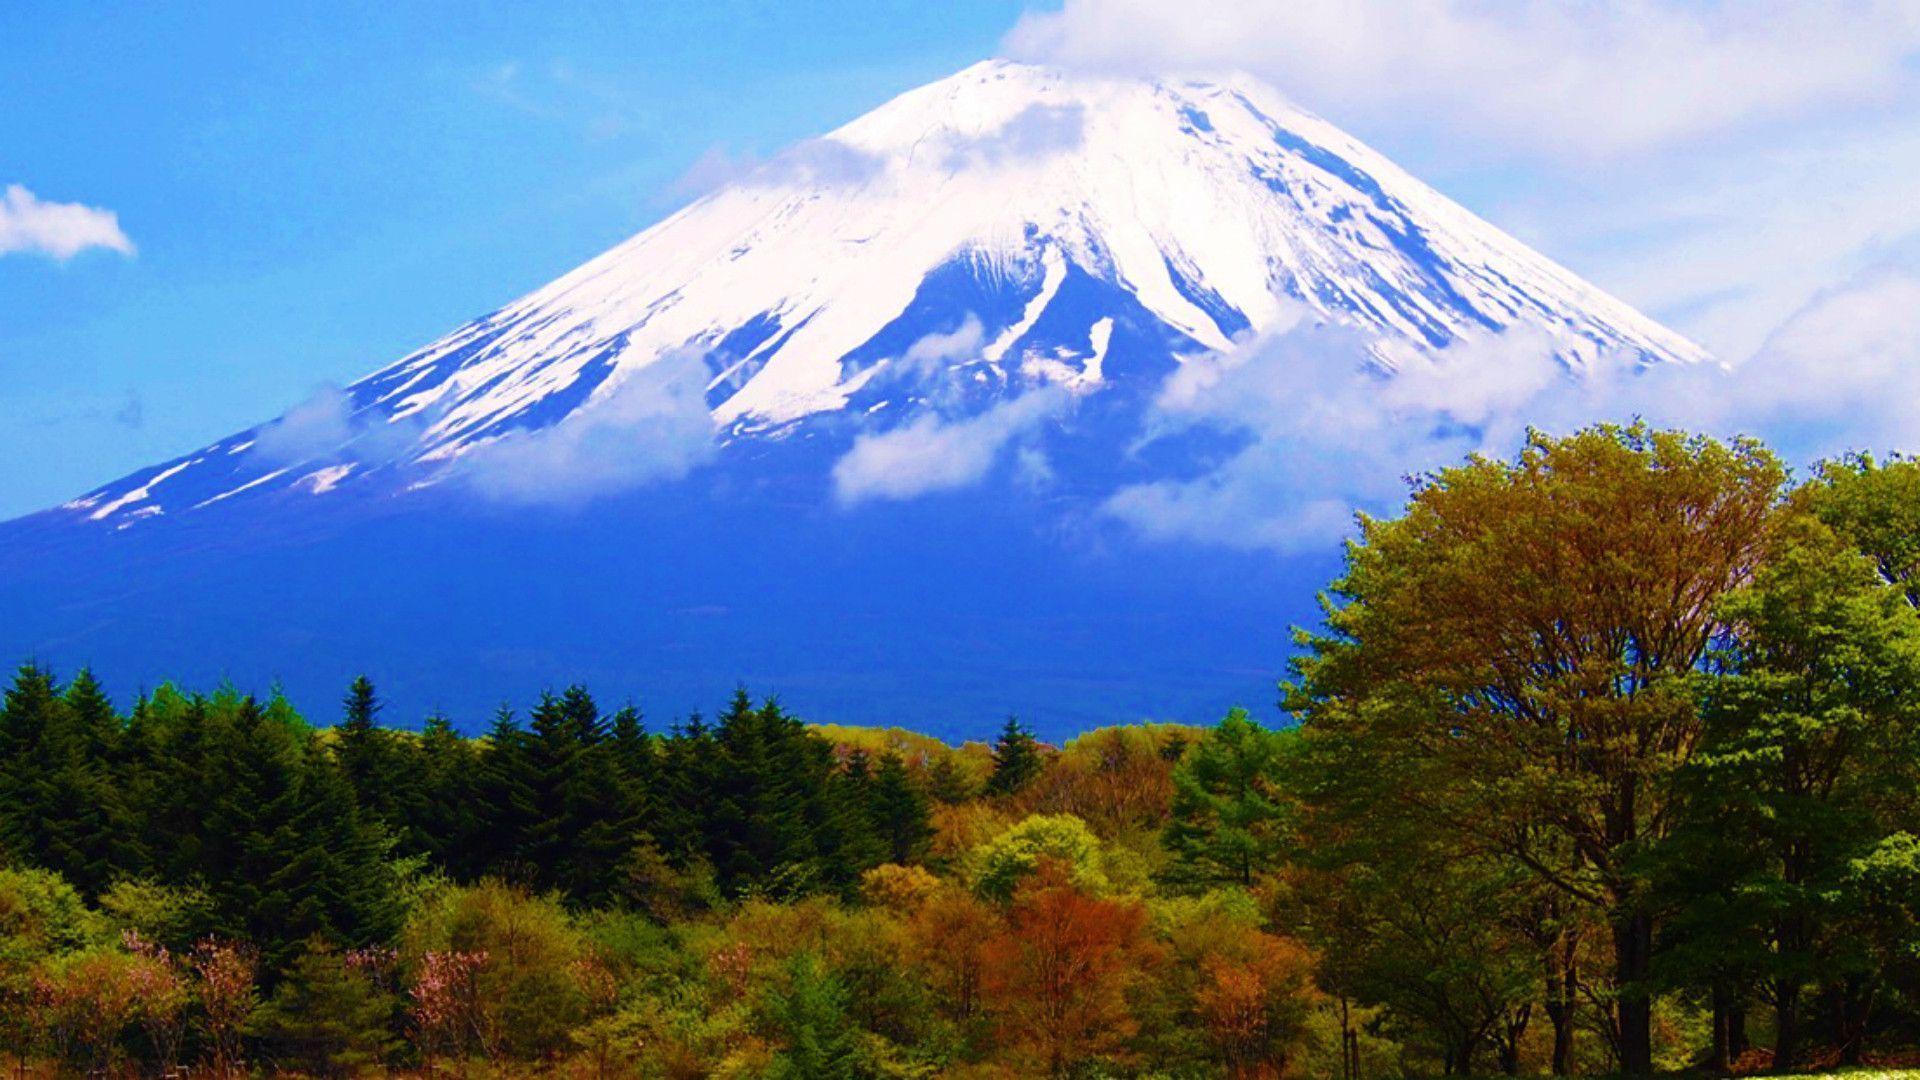 Hd Wallpaper Mount Fuji 1920 X 1080 256 Kb Jpeg. HD Wallpaper